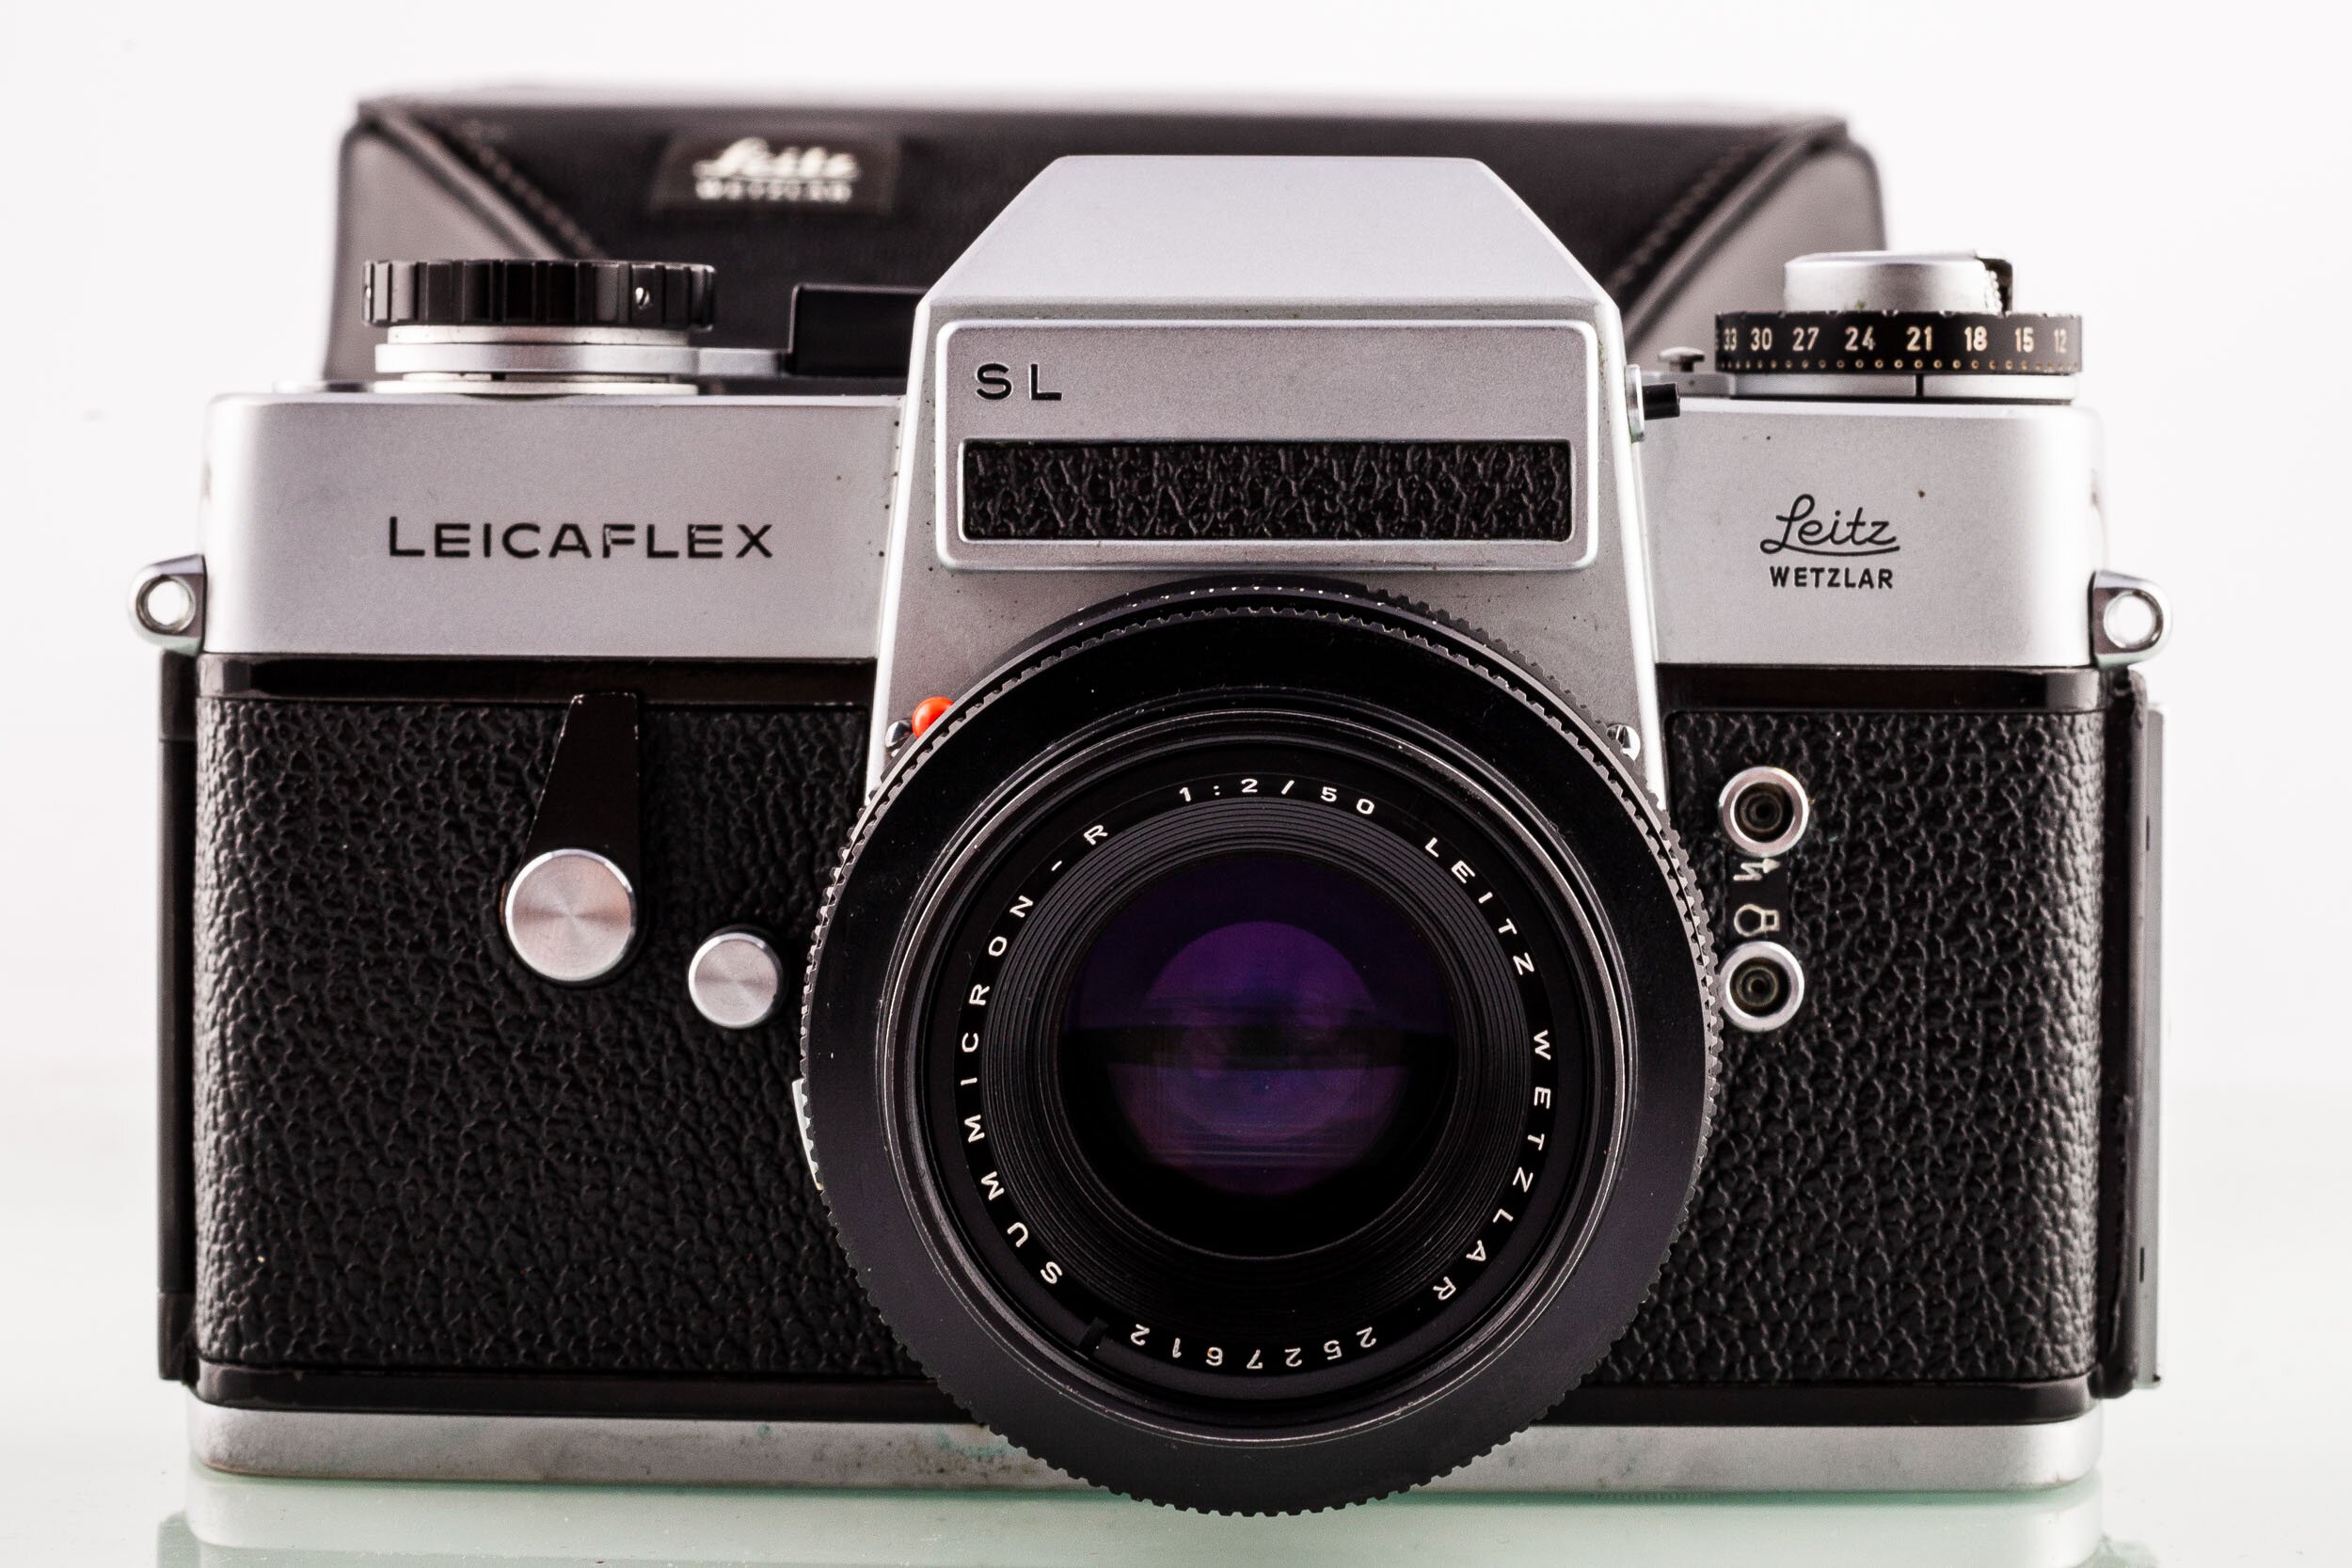 Leicaflex SL body + Summicron-R 2/50mm